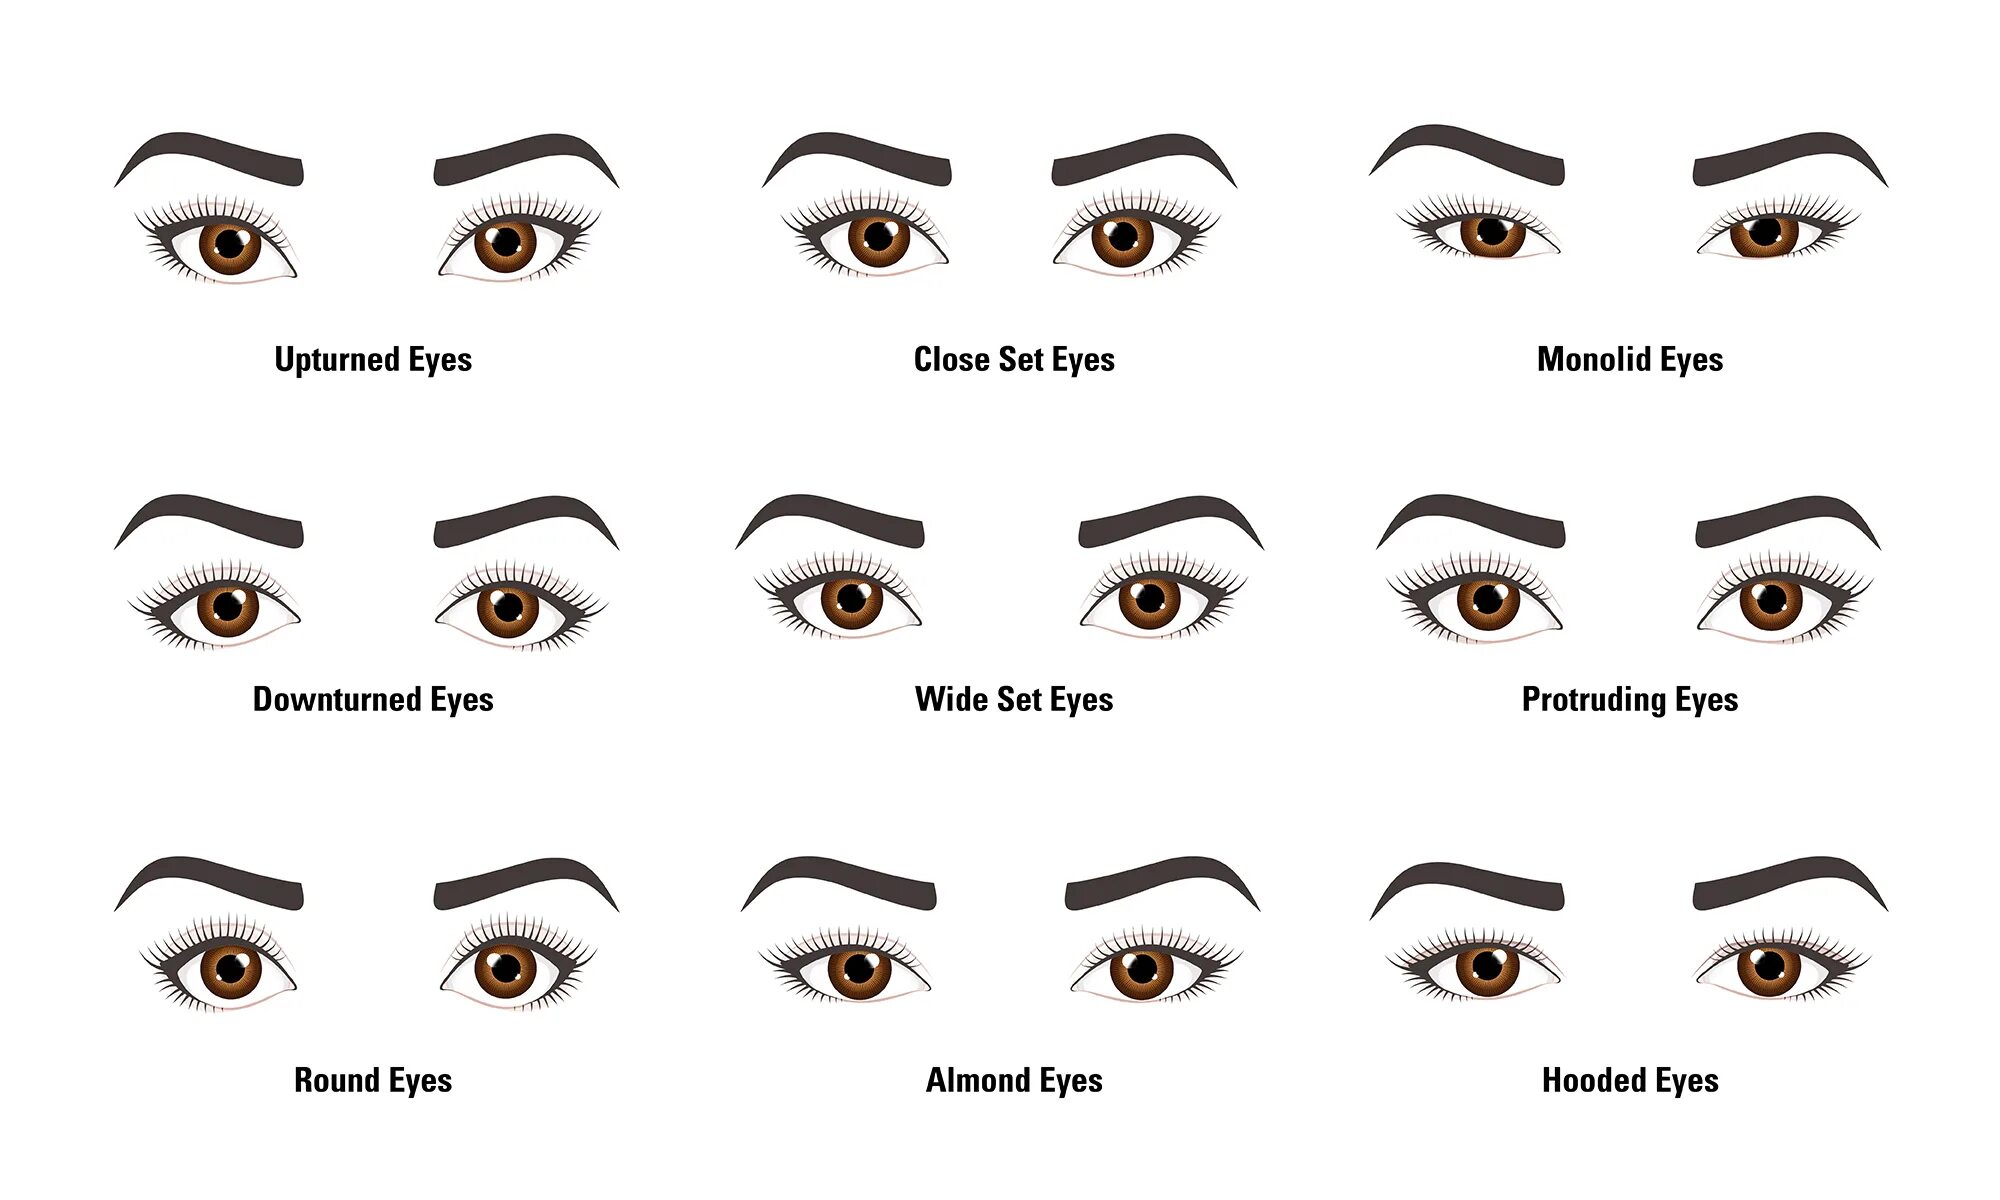 Form eyes. Макияж для выпуклой формы глаз. Схемы макияжа для разных форм глаз. Различные разрезы глаз. Глаз в разрезе.